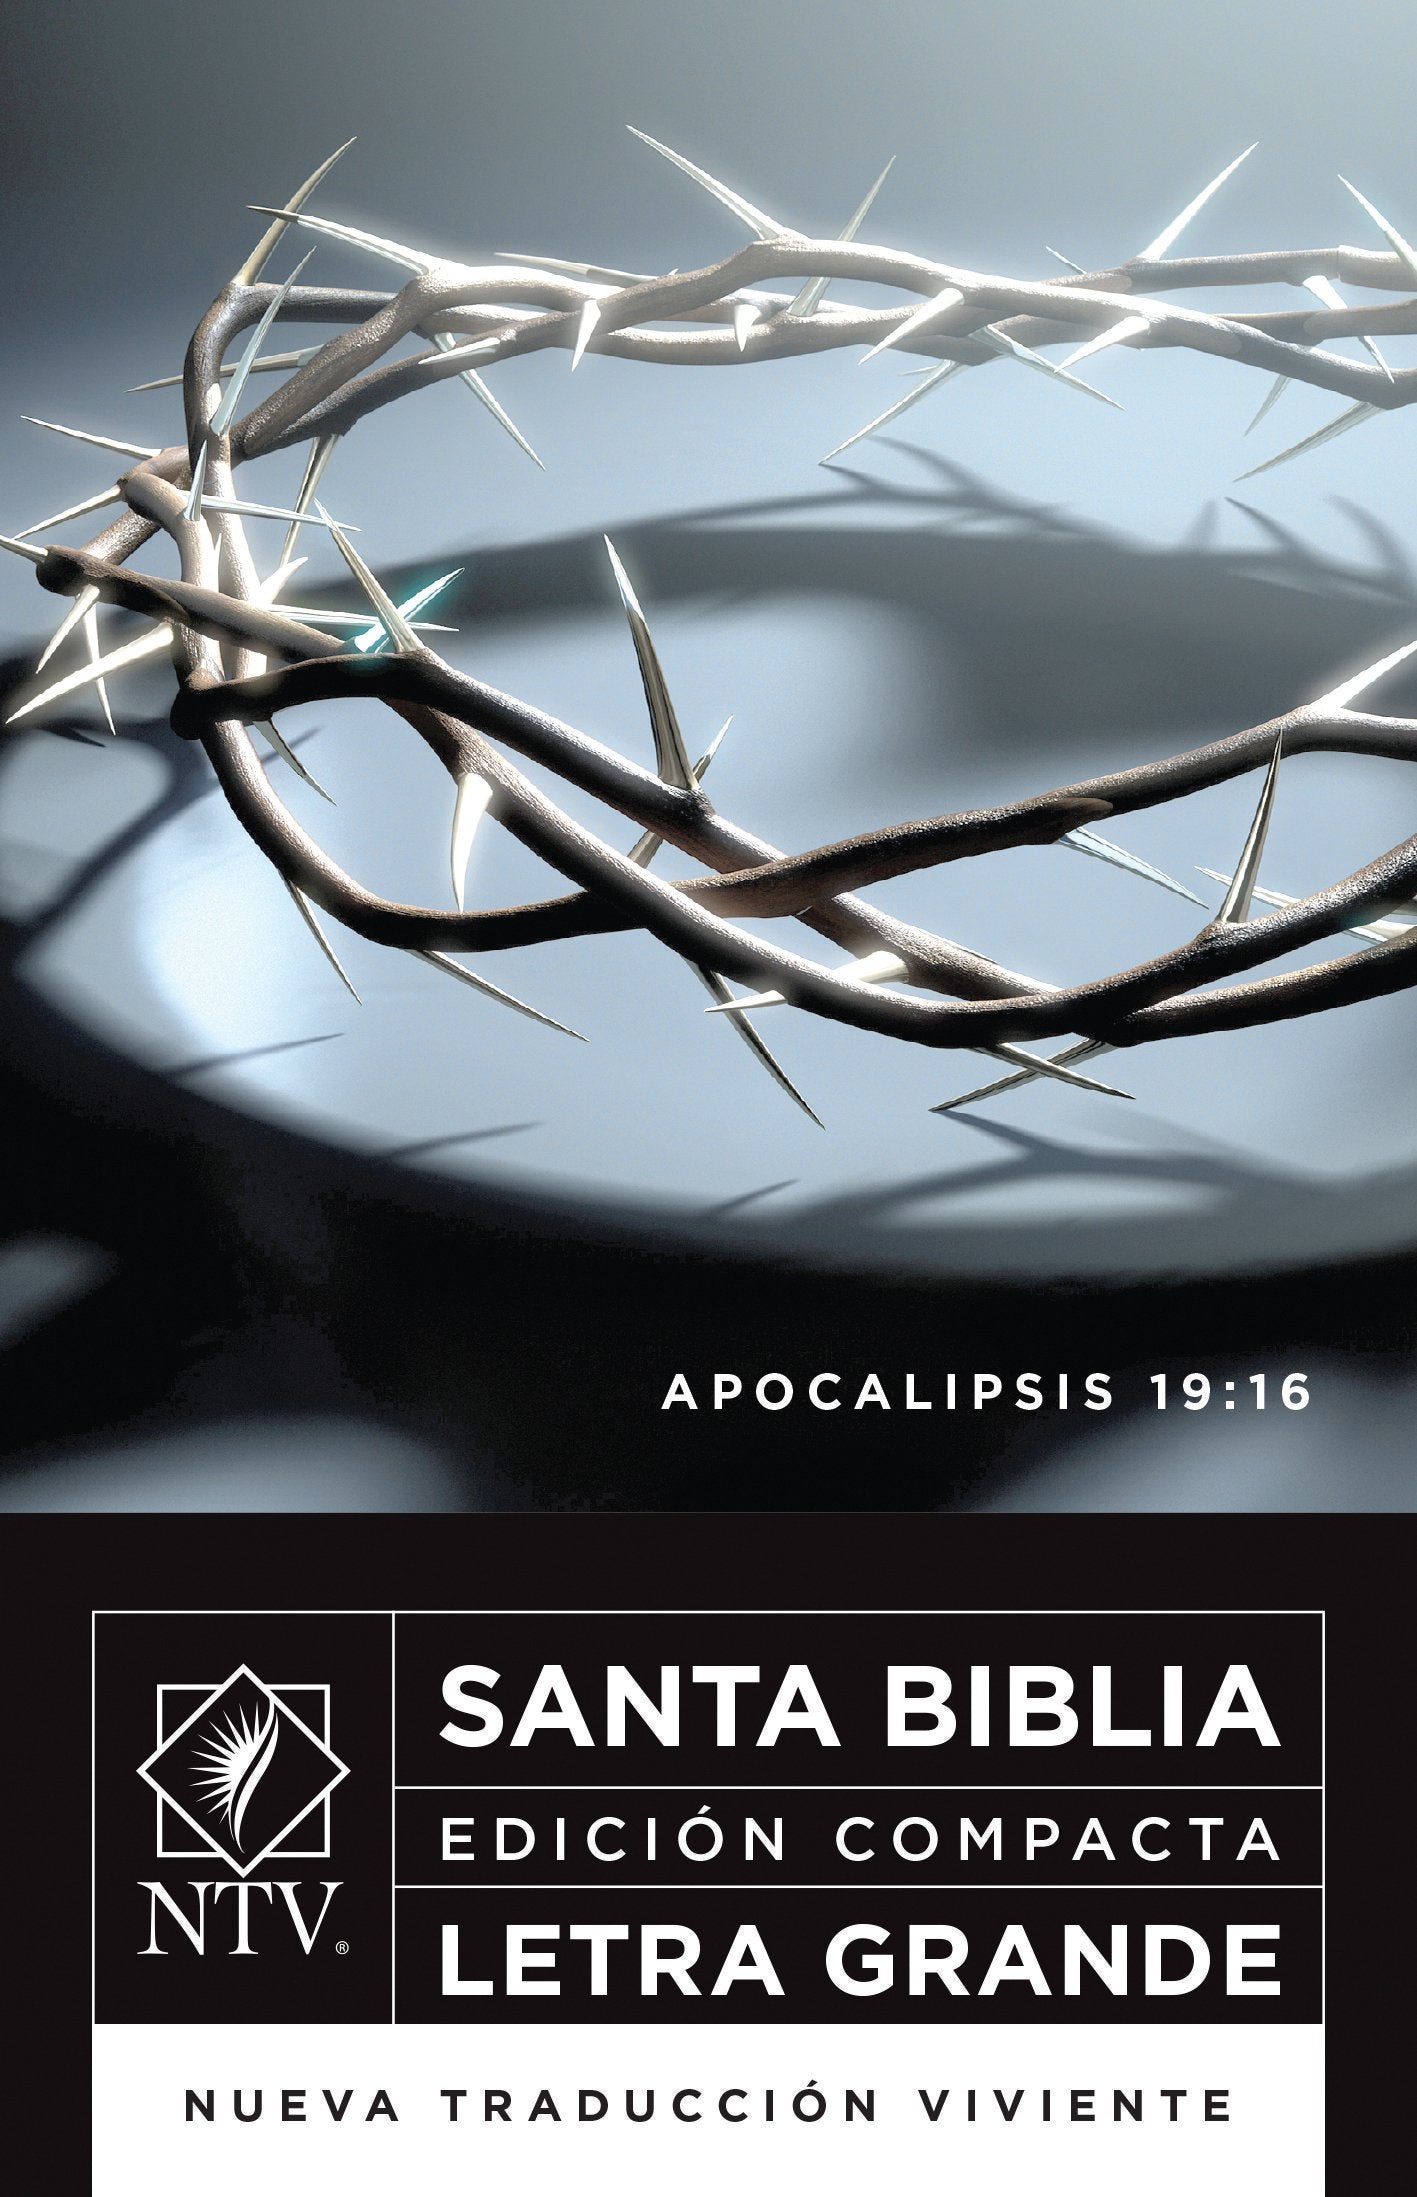 Santa Biblia NTV, Edición compacta letra grande, Apocalipsis 19:16 (Spanish Edition)